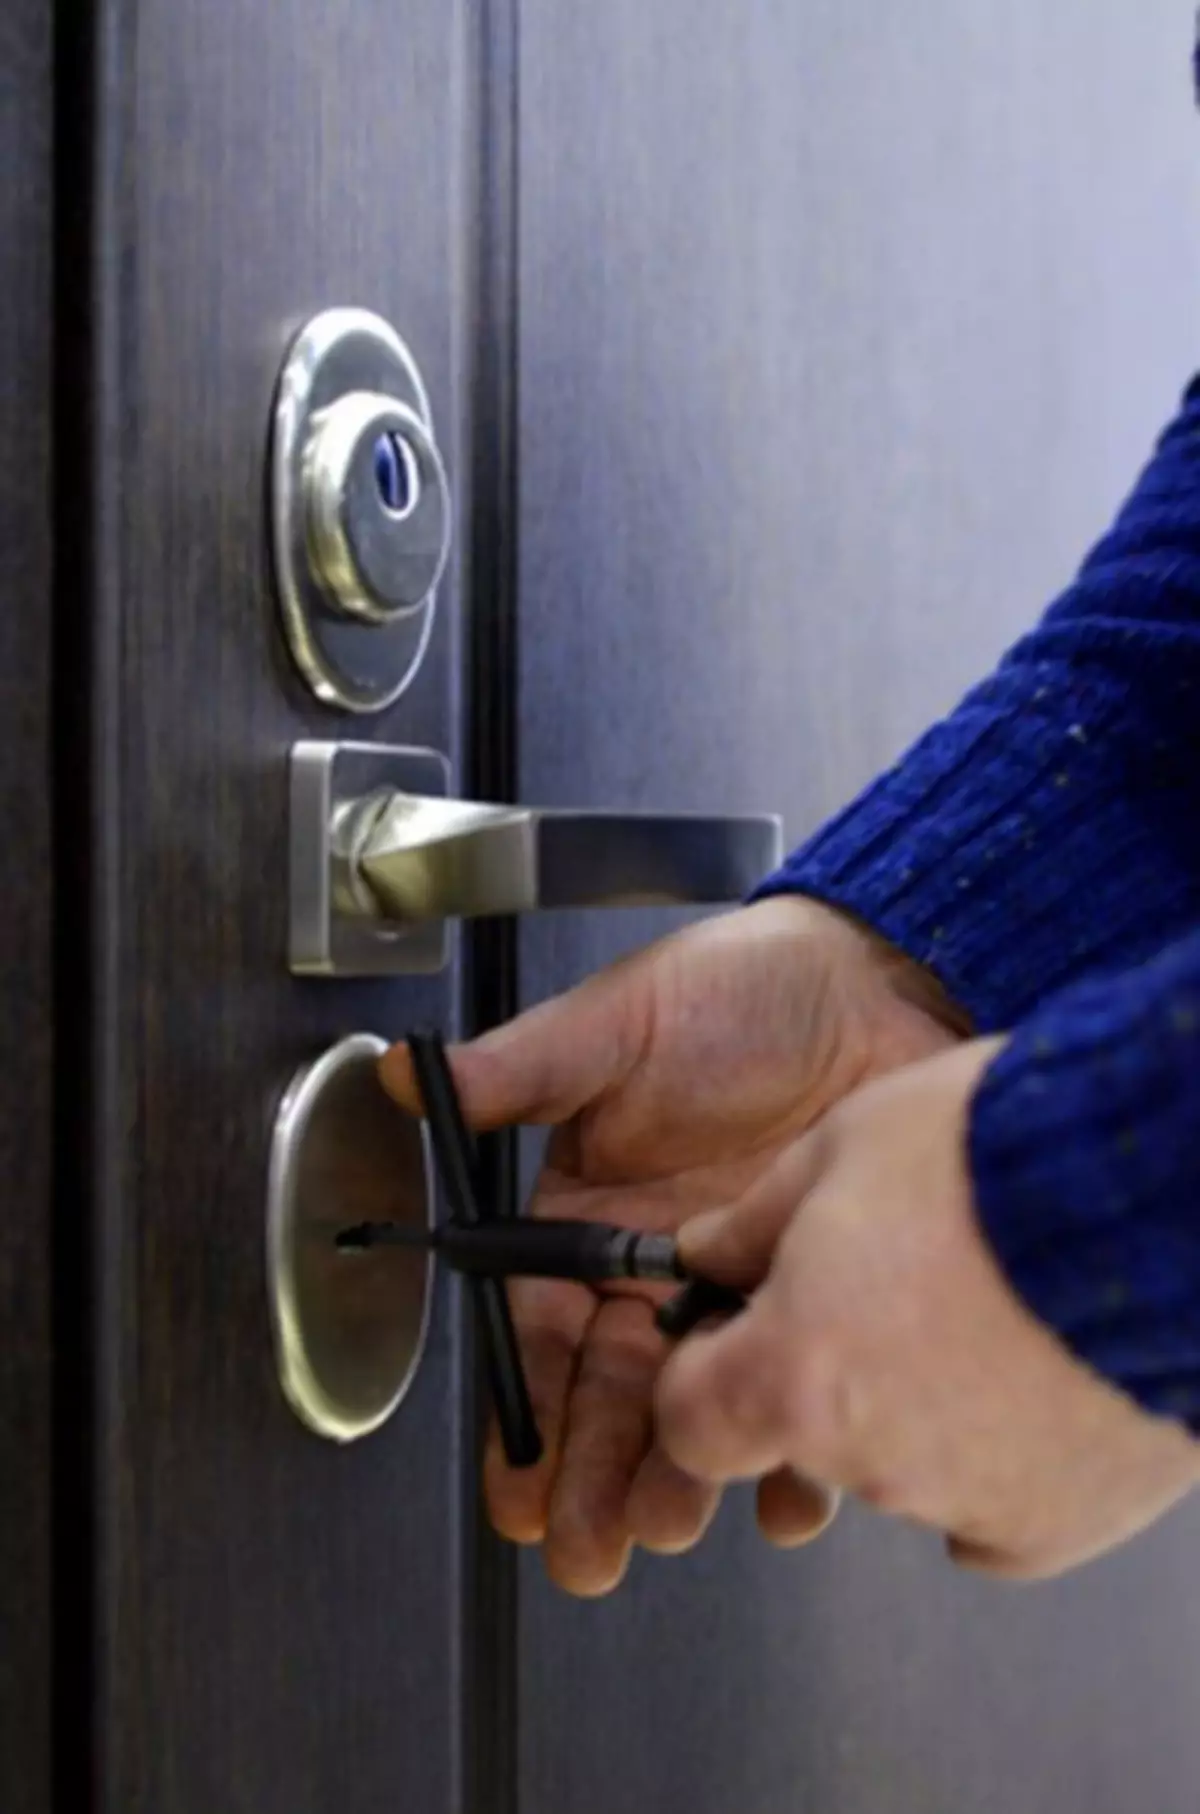 Làm thế nào để mở cửa mà không có chìa khóa - nếu bạn bị mất?